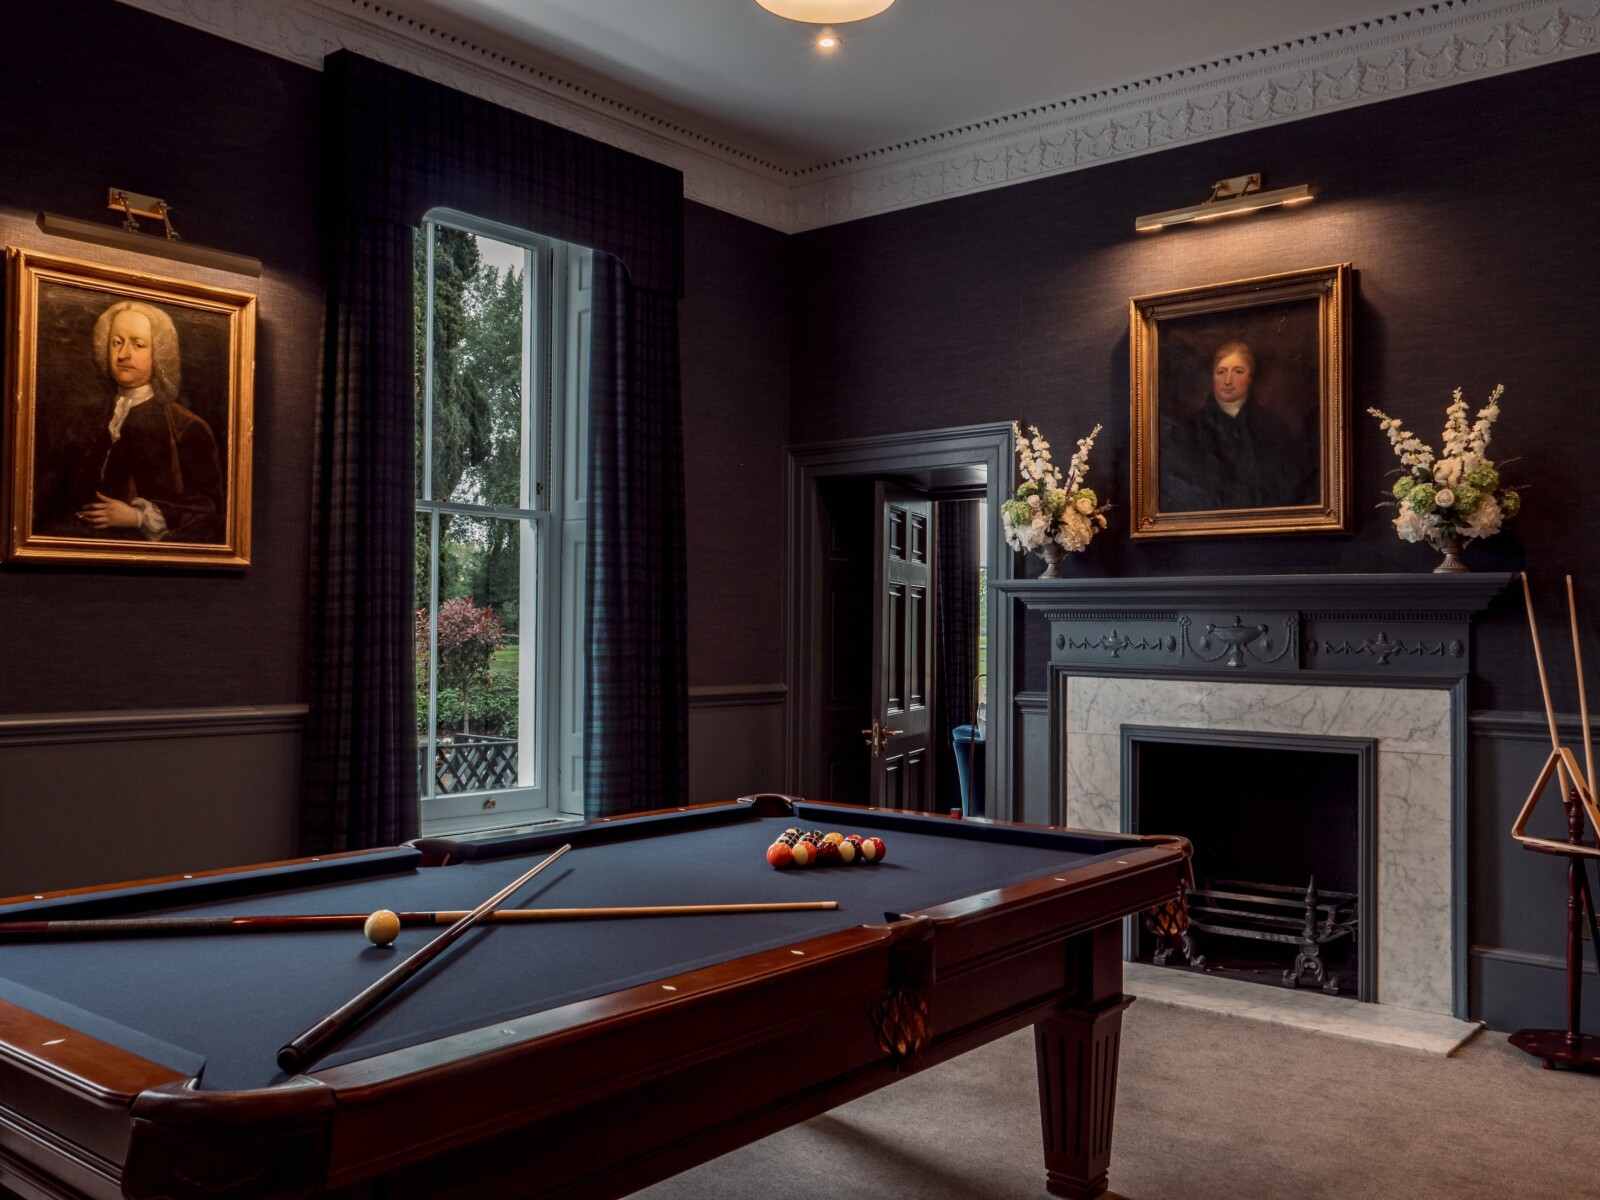 5 Billiards Room Buckinghamshire presenta una elegante renovación de su casa club por valor de £ 10 millones - Golf News